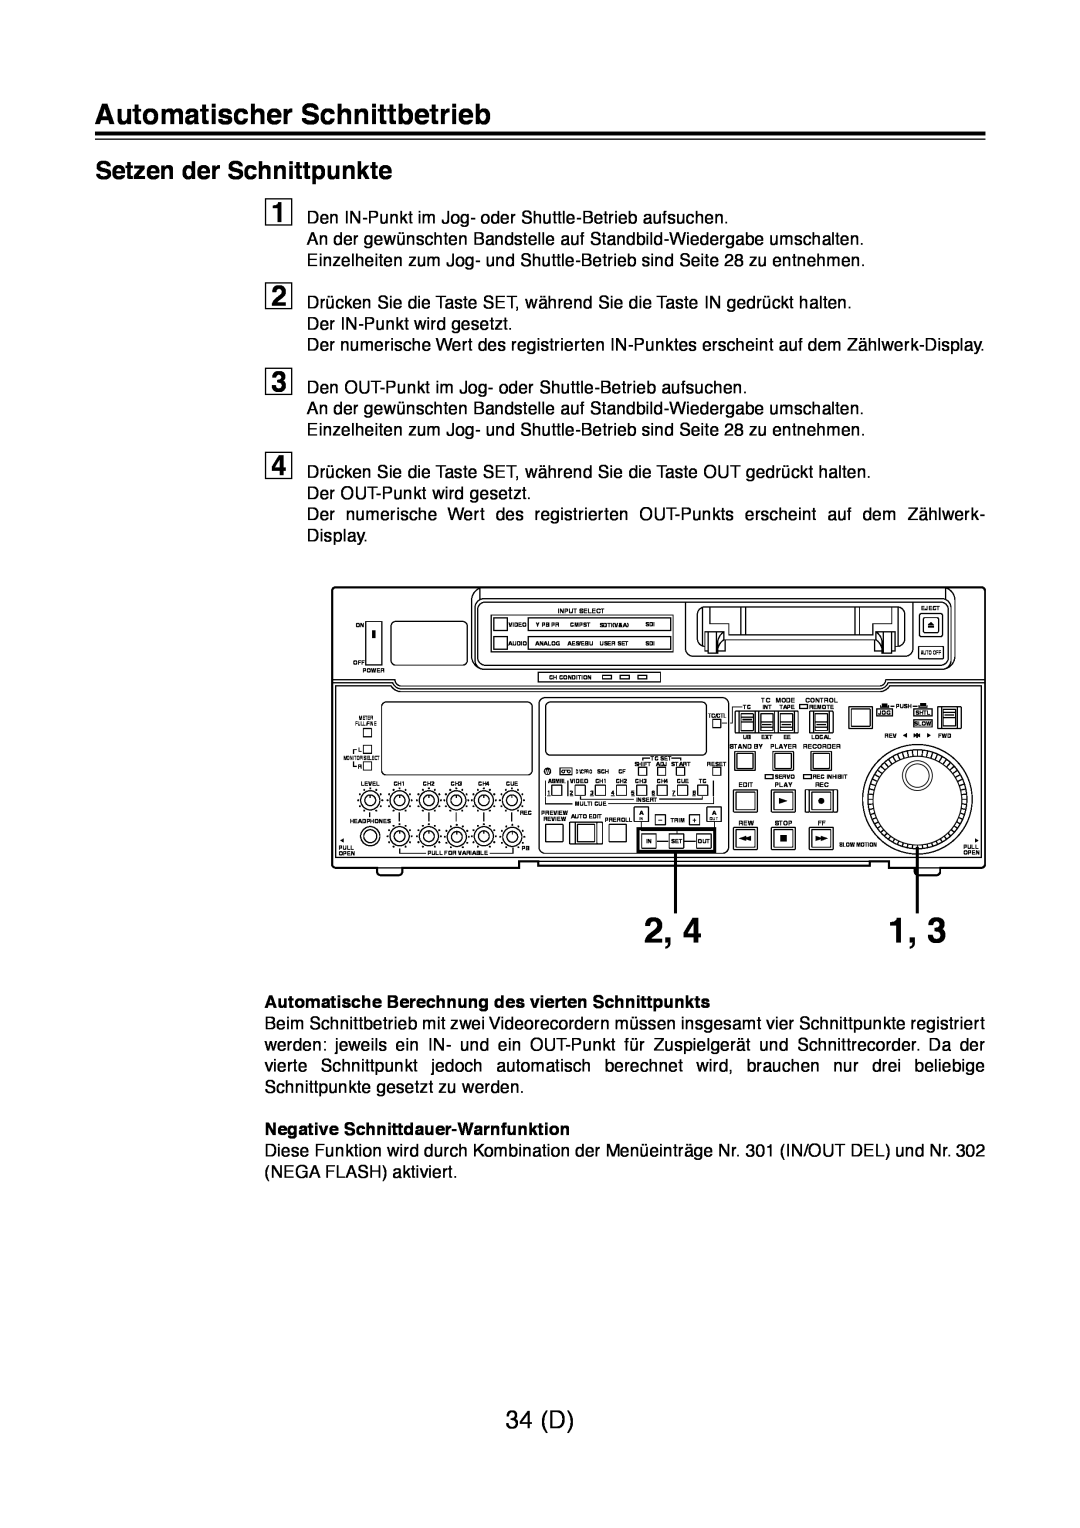 Panasonic AJ-D960 operating instructions Setzen der Schnittpunkte, 34 D, Automatische Berechnung des vierten Schnittpunkts 